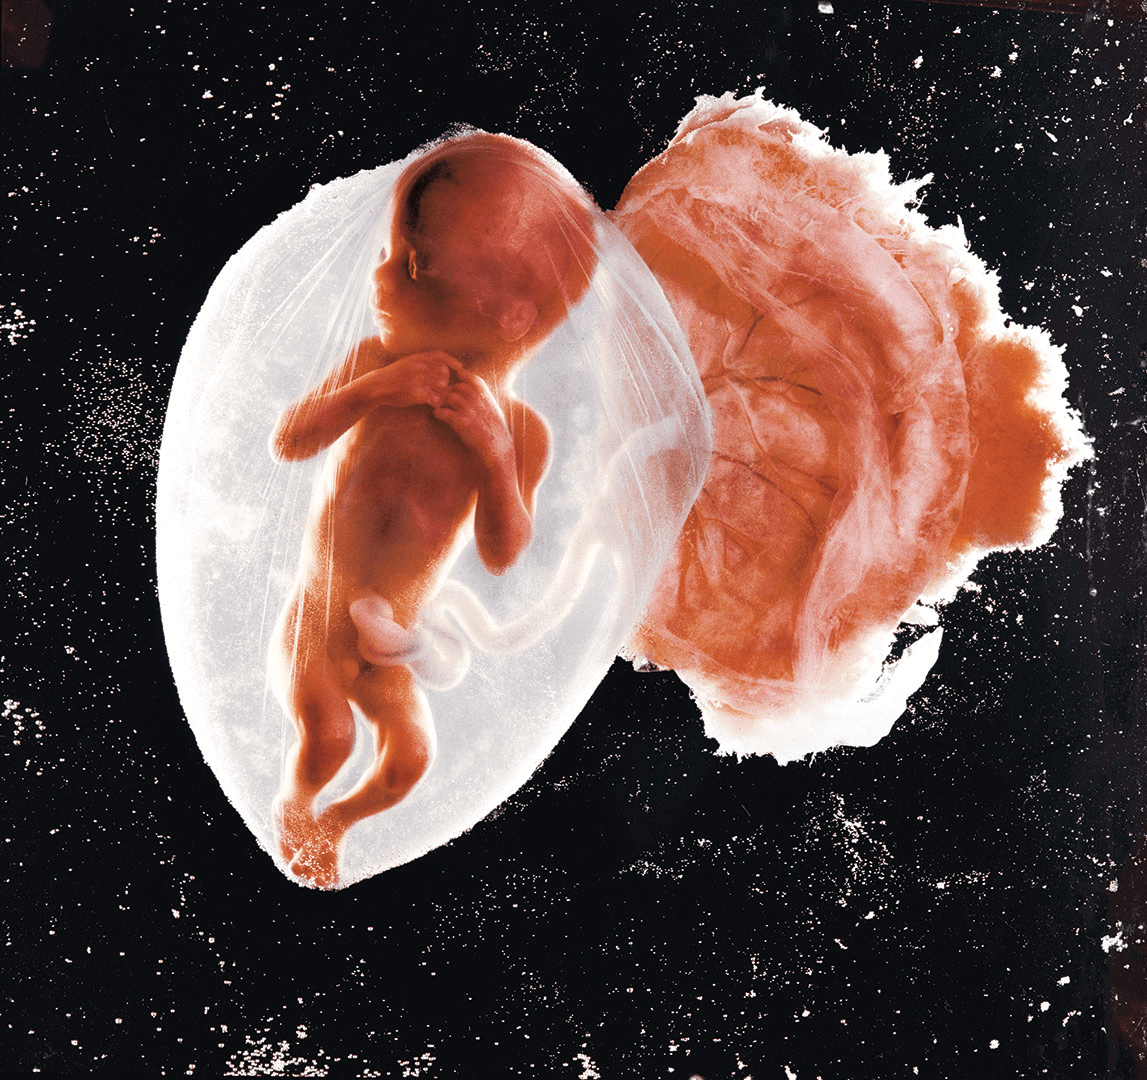 Η καταπληκτική εικόνα ενός αγέννητου μωρού 18 εβδομάδων αναδεικνύεται στη  «Φωτογραφία του Αιώνα»